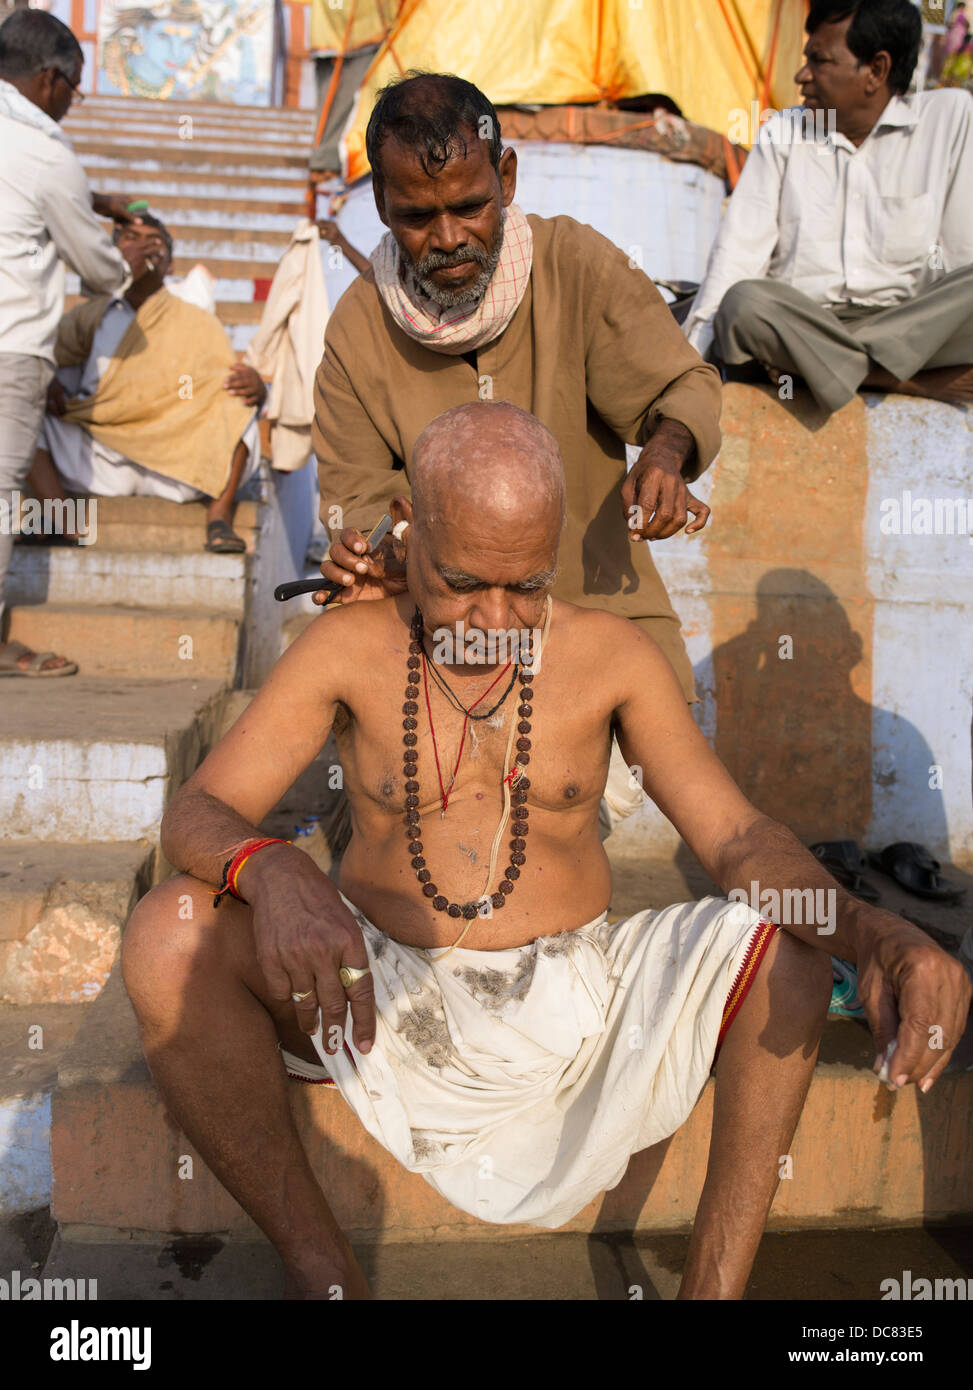 Morgen rasieren. Haare schneiden. Leben am Ufer des Flusses Ganges - Varanasi, Indien Stockfoto